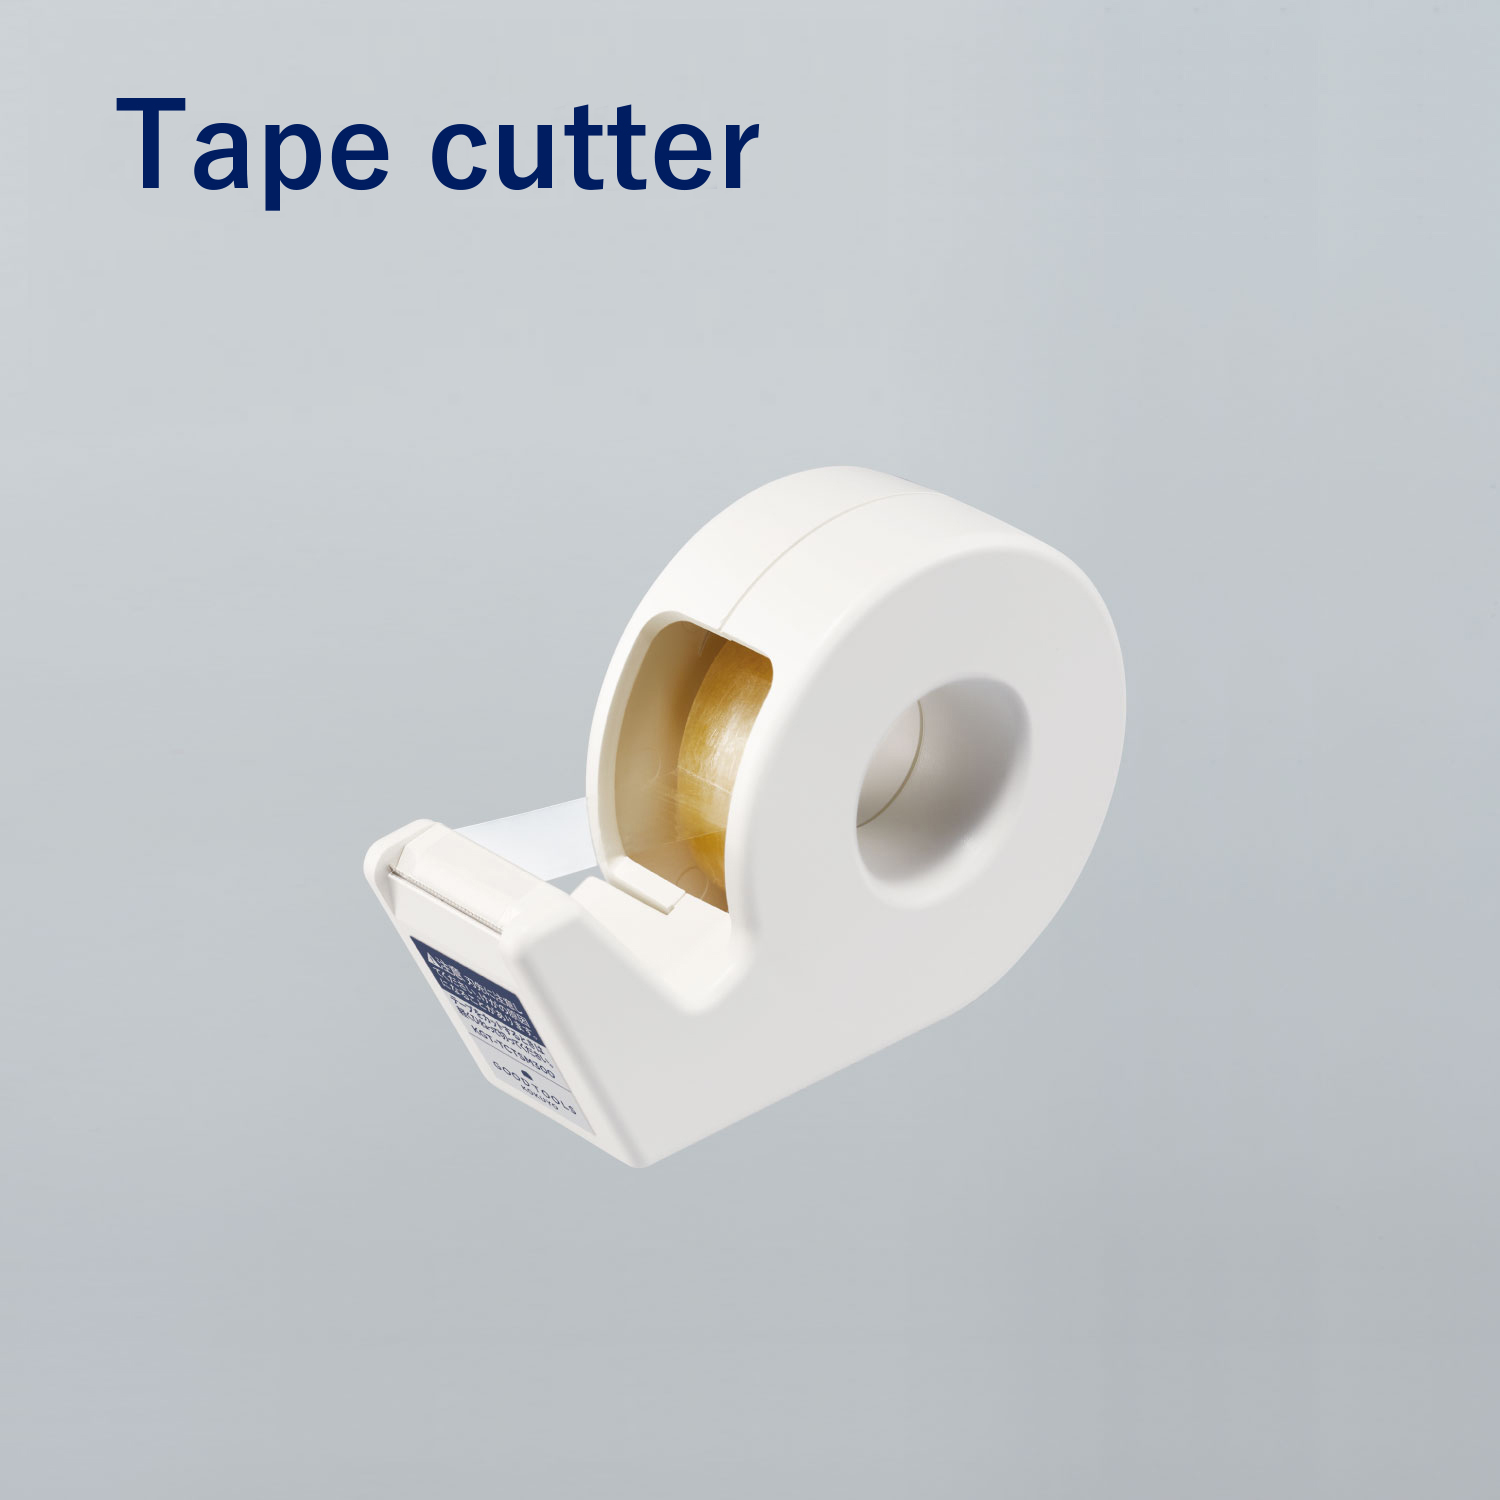 Tape Cutter